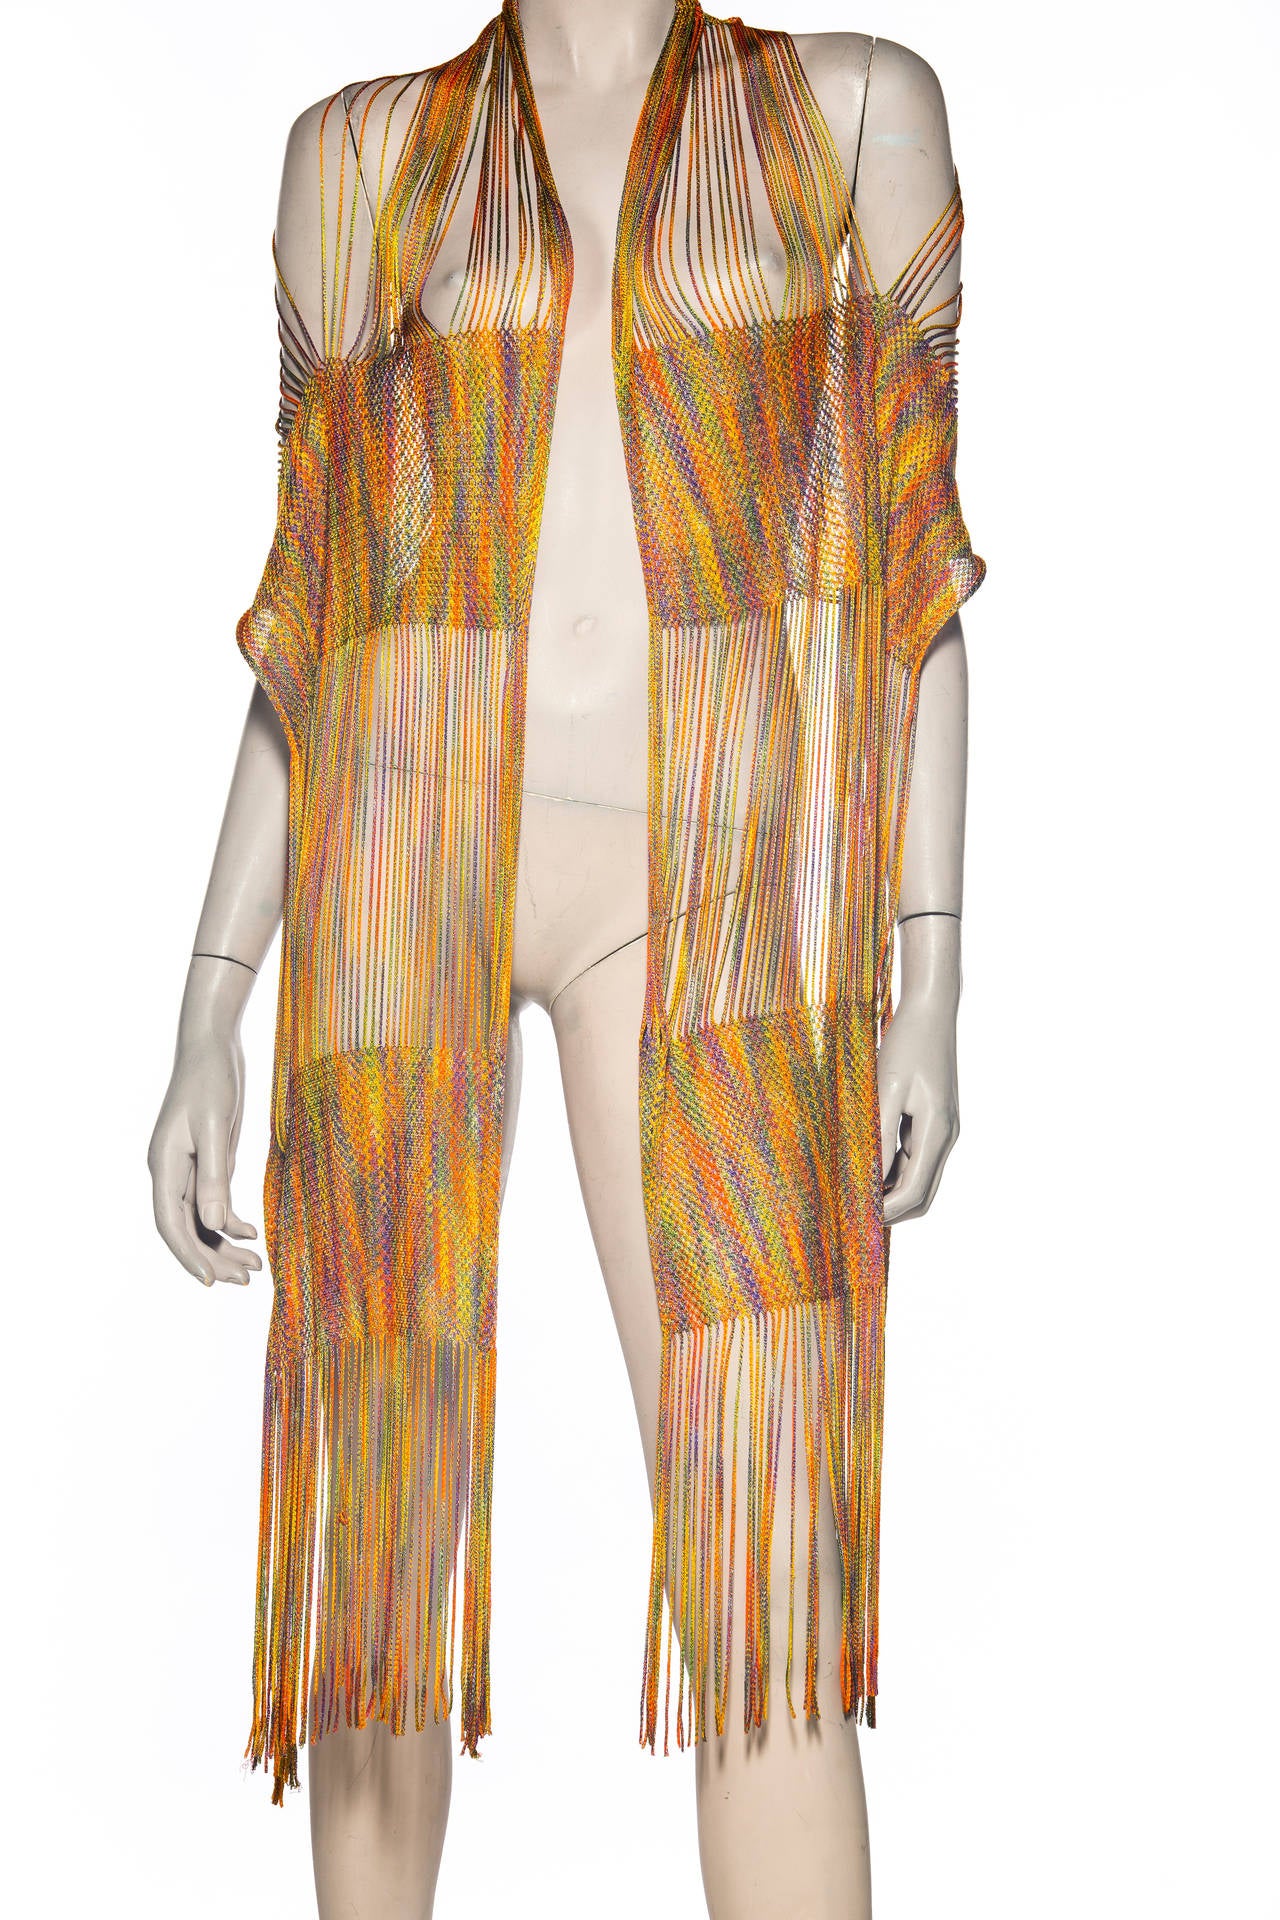 Missoni Rainbow Striped Knit Pant Suit Ensemble, Circa 1970's For Sale 3